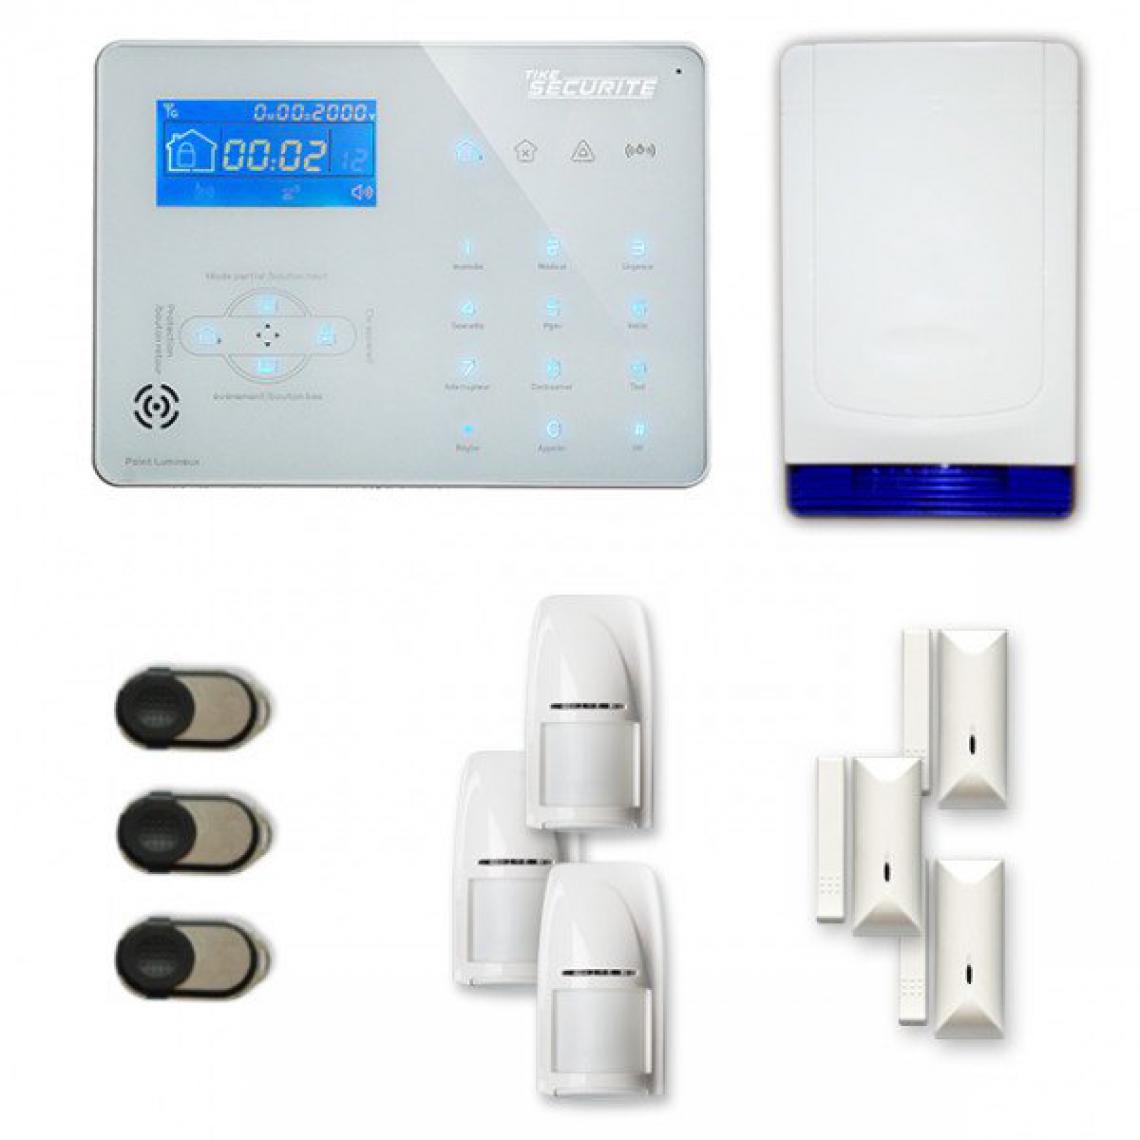 Tike Securite - Alarme maison sans fil ICE-B16 Compatible Box internet et GSM - Alarme connectée